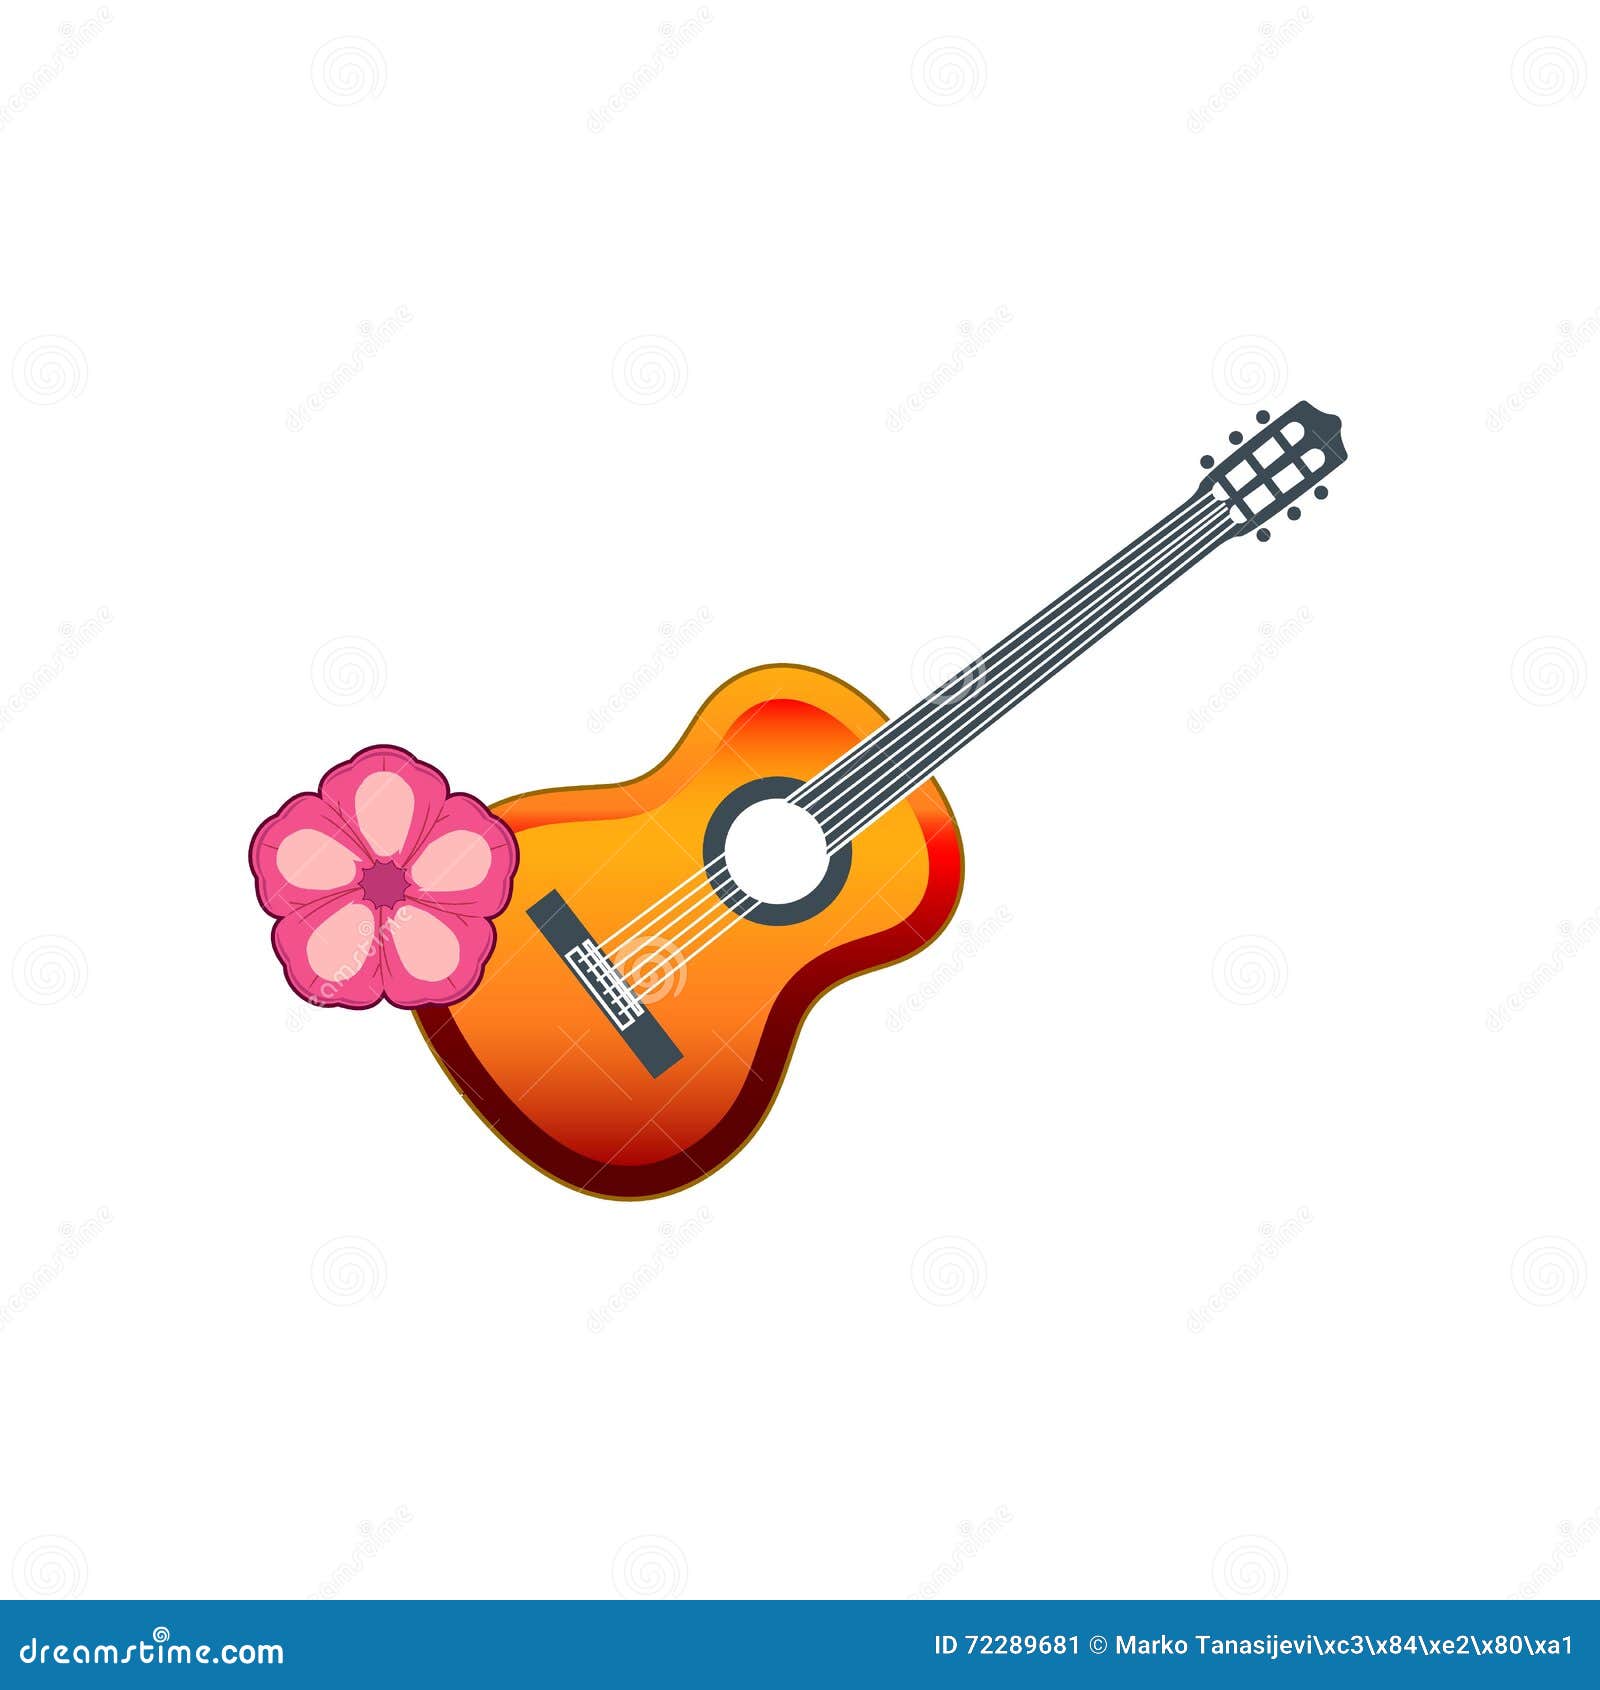 búnker cruzar Increíble Guitarra hawaiana ilustración del vector. Ilustración de desfile - 72289681